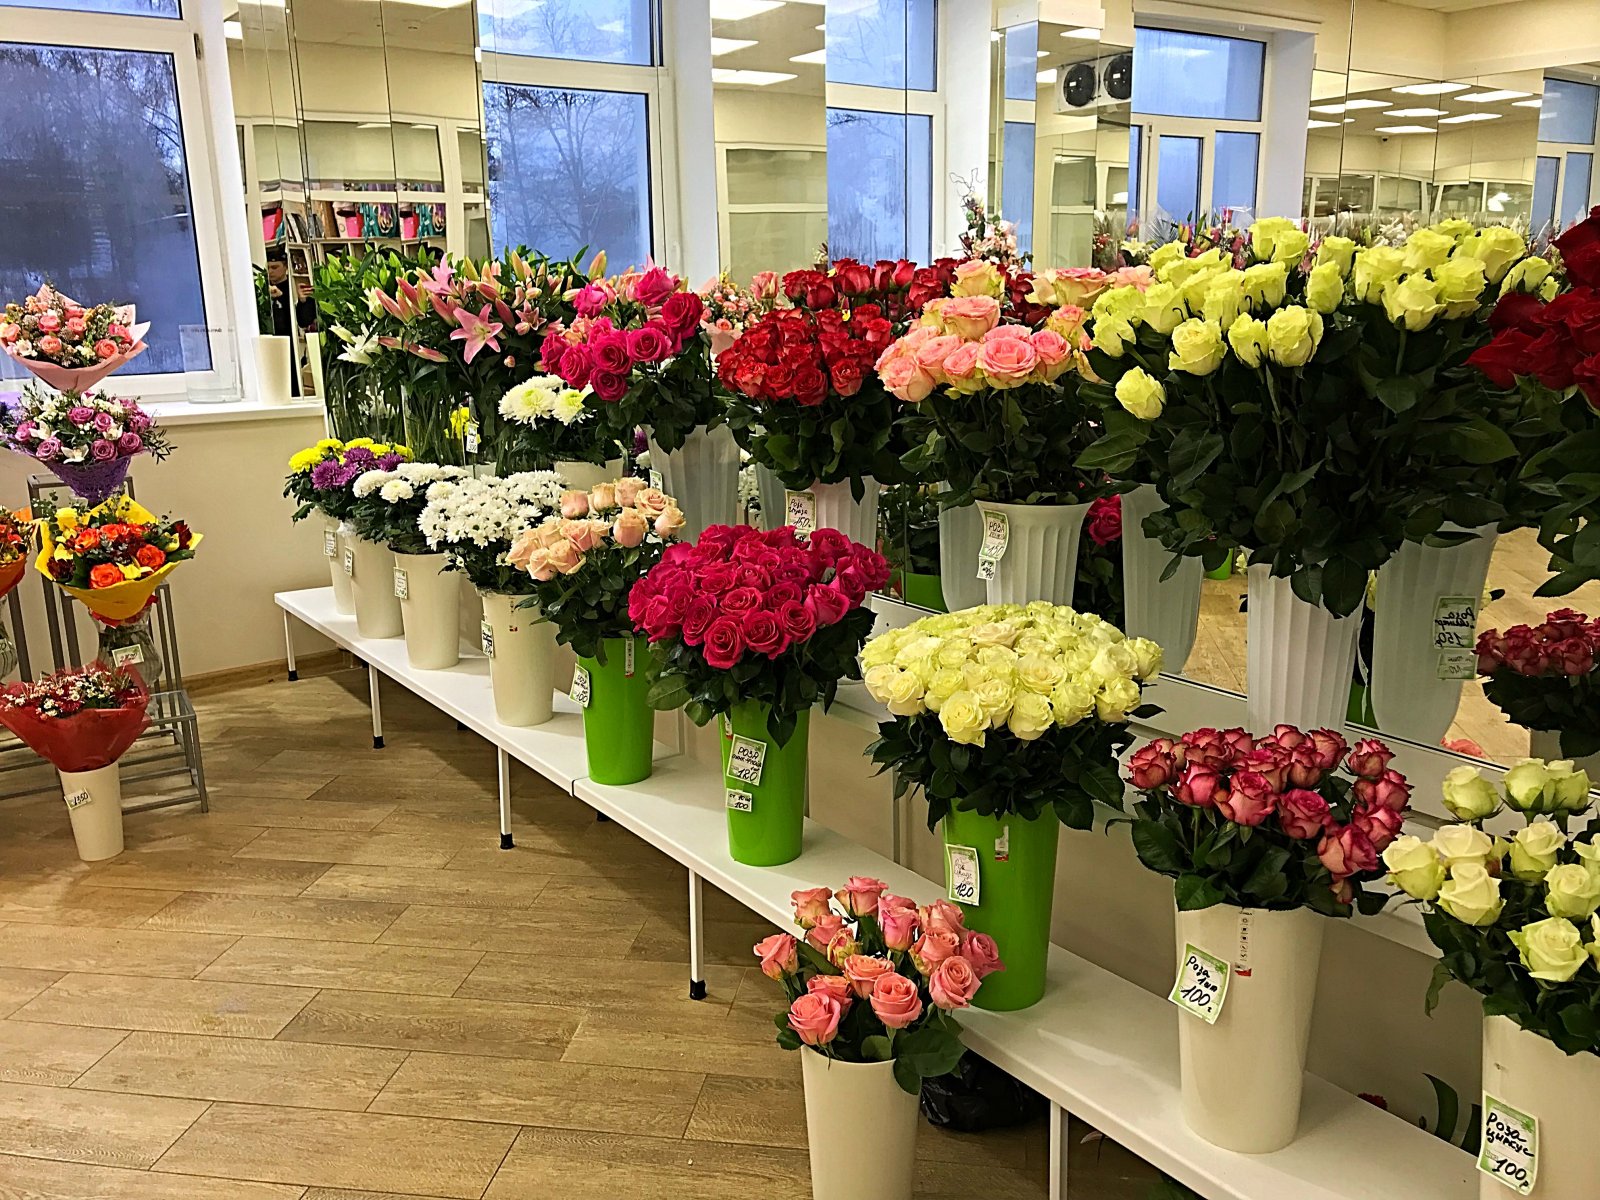 Купить розы в чебоксарах. Цветы в цветочном магазине. Цветы магазинные. Ассортимент цветочного магазина. Букеты в цветочных магазинах.